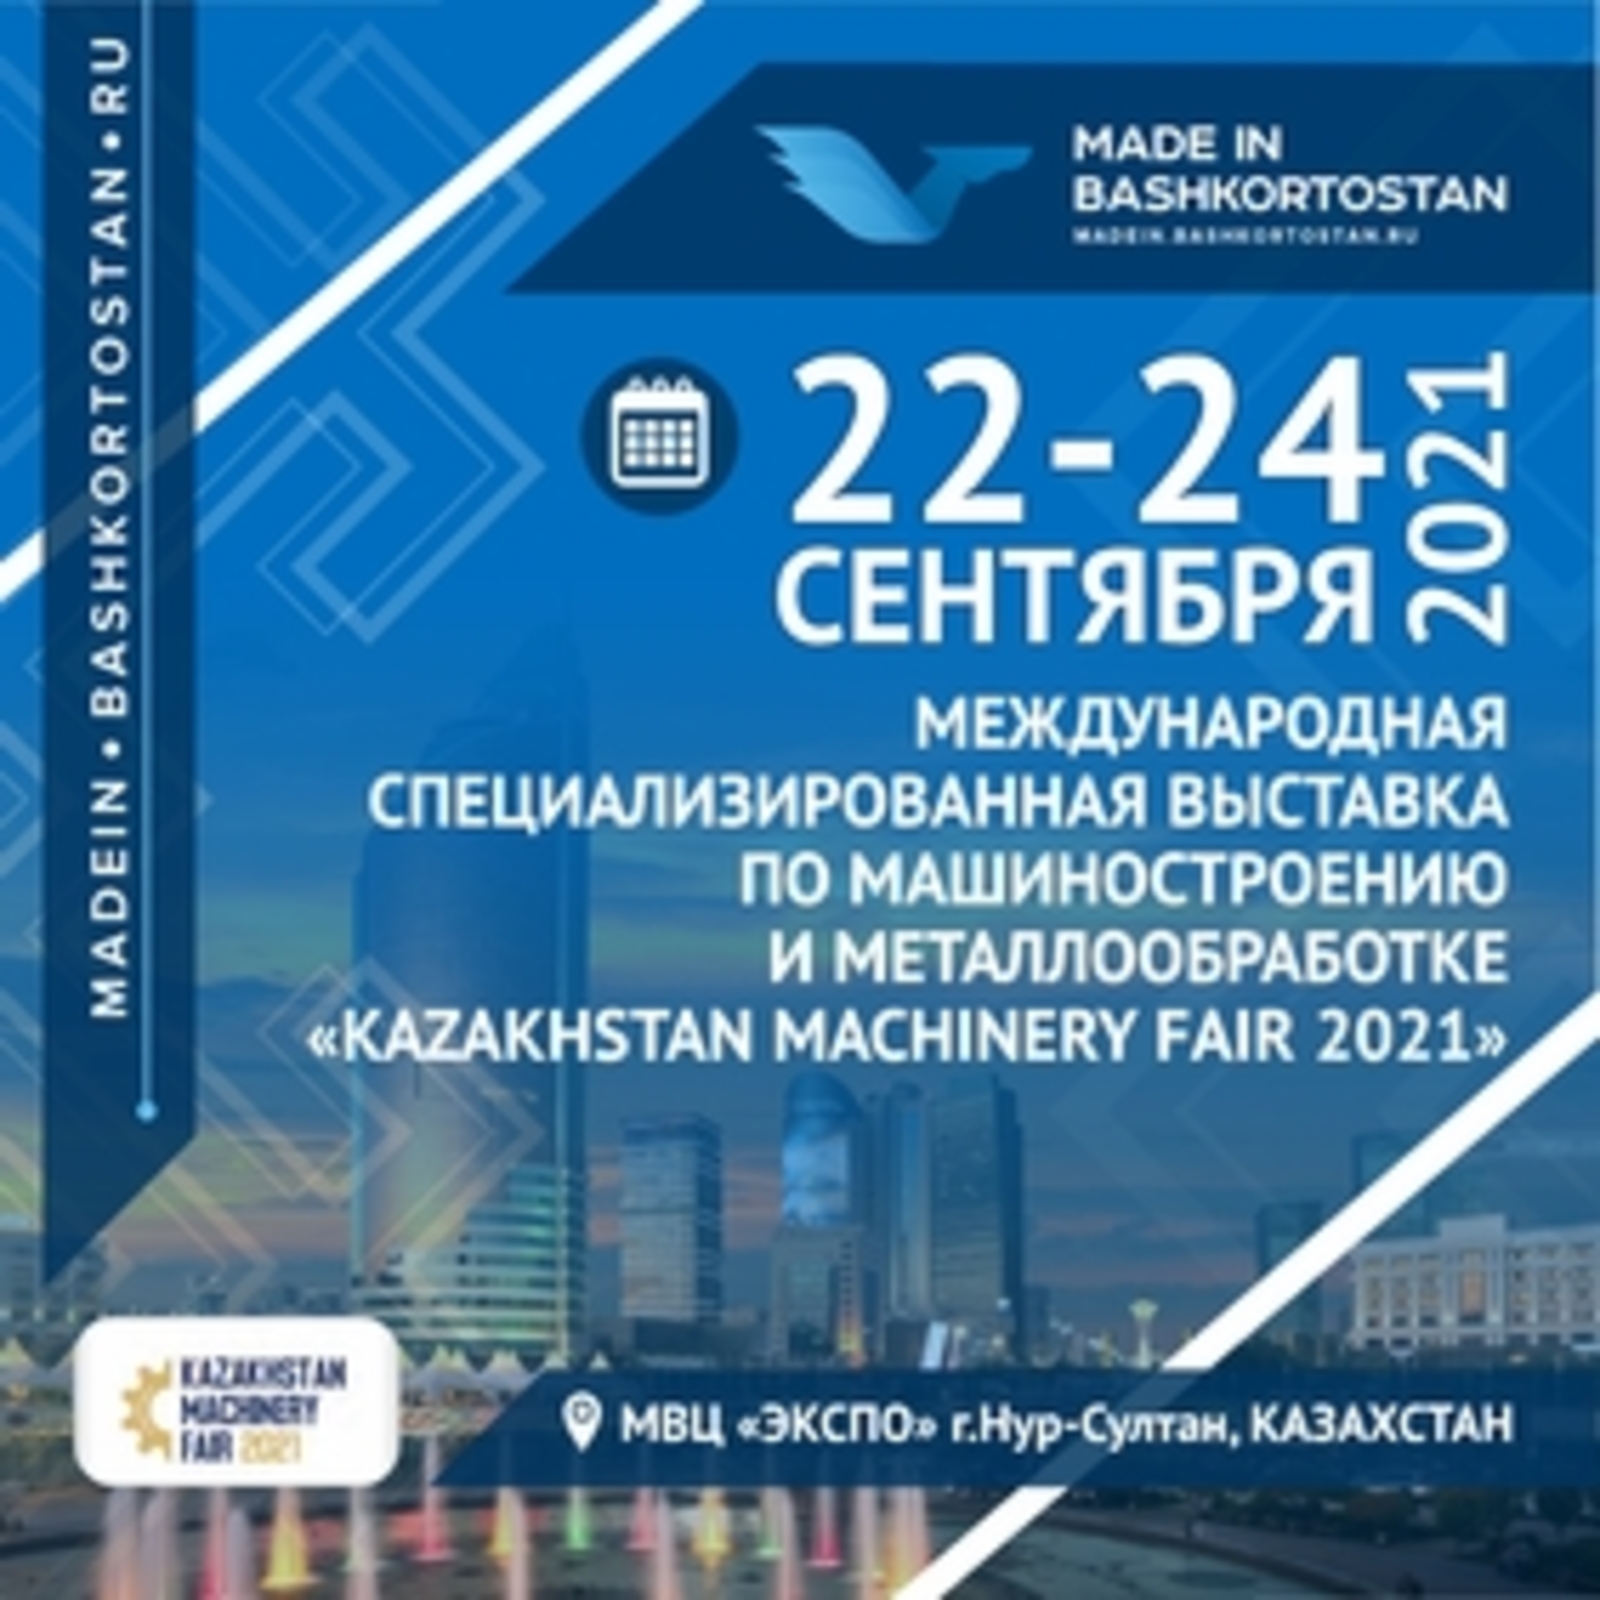 Приглашаем к участию в работе Международной специализированной выставки по машиностроению и металлообработке «Kazakhstan Machinery Fair 2021»